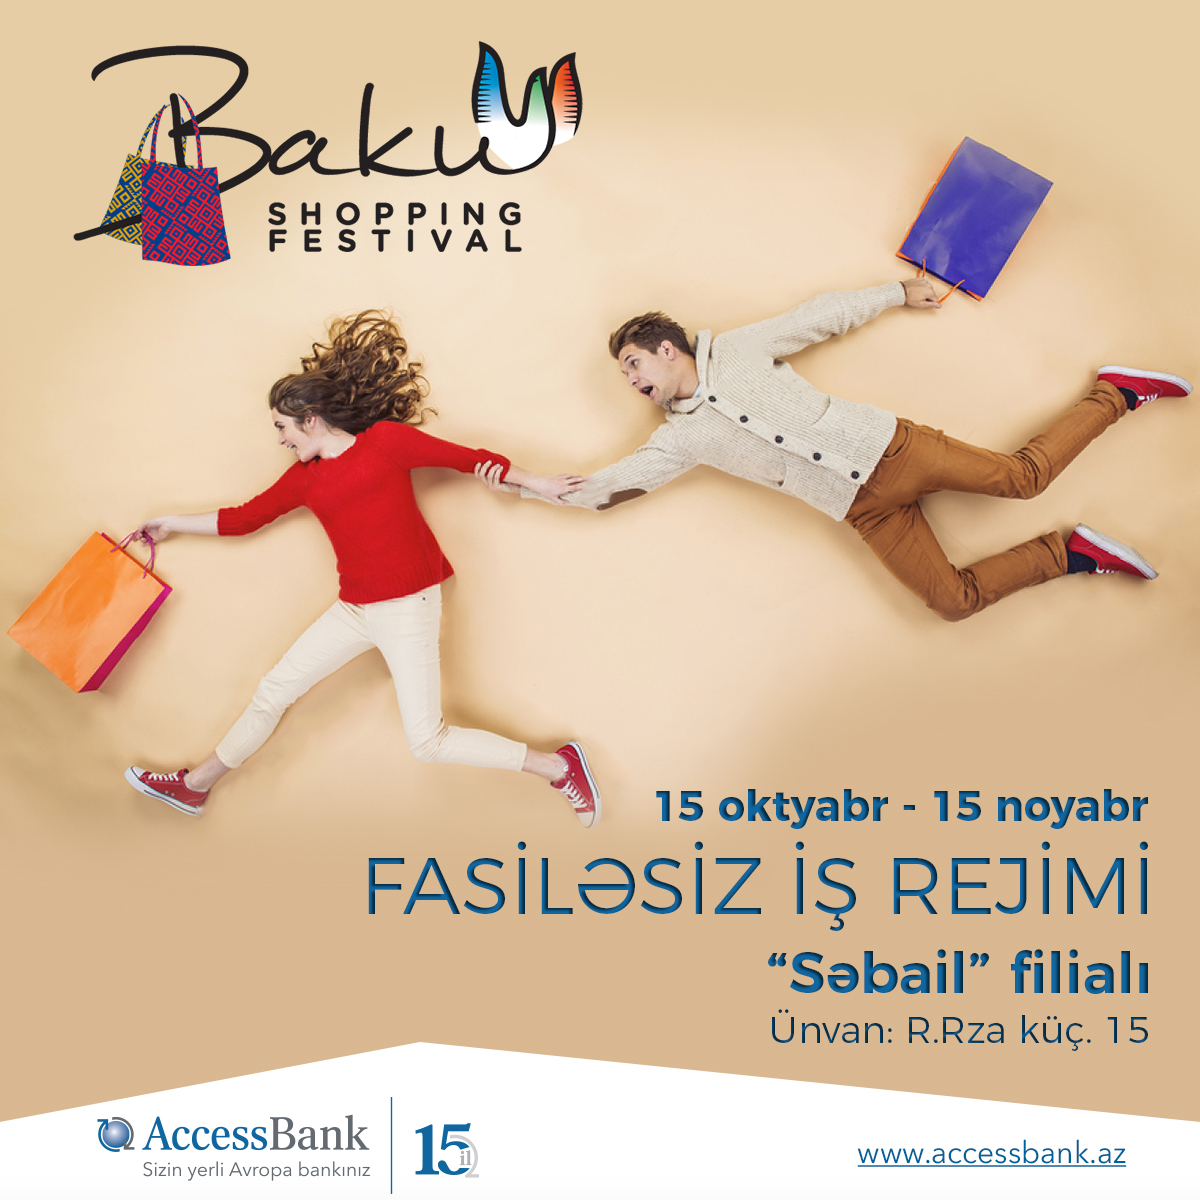 В дни “Baku Shopping Festival” AccessBank будет работать без выходных